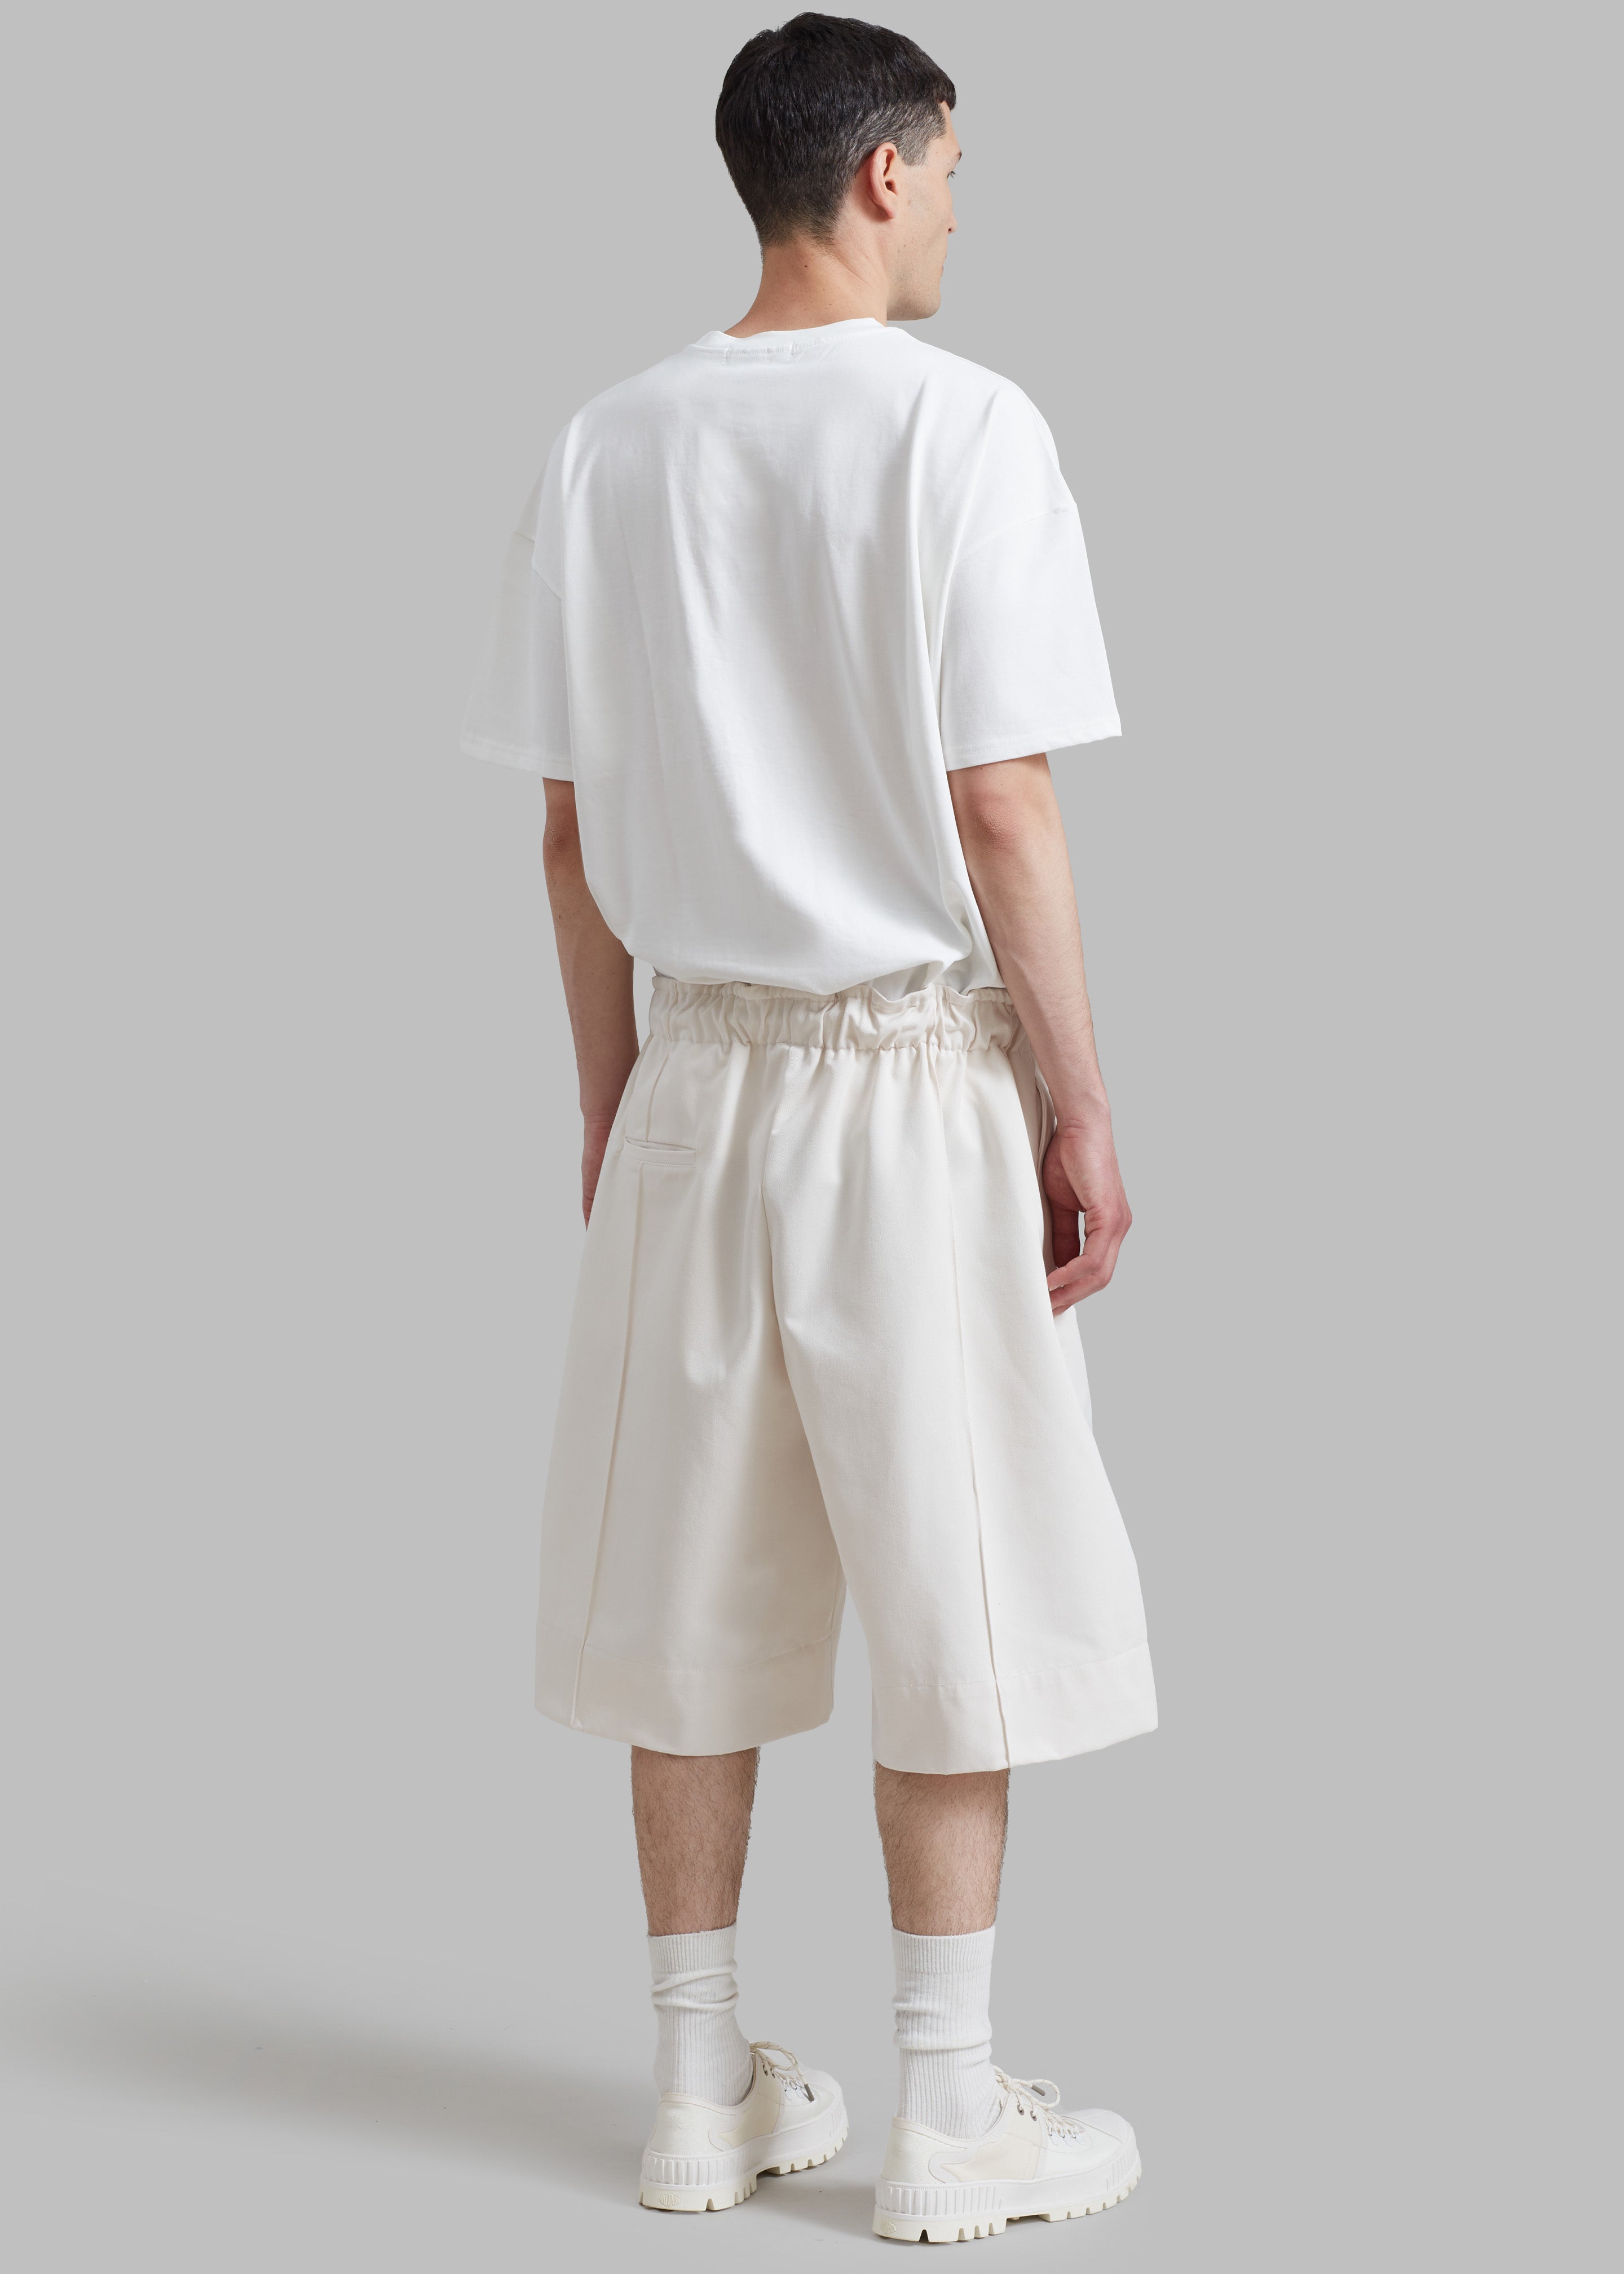 Adan Bermuda Shorts - Cream - 10